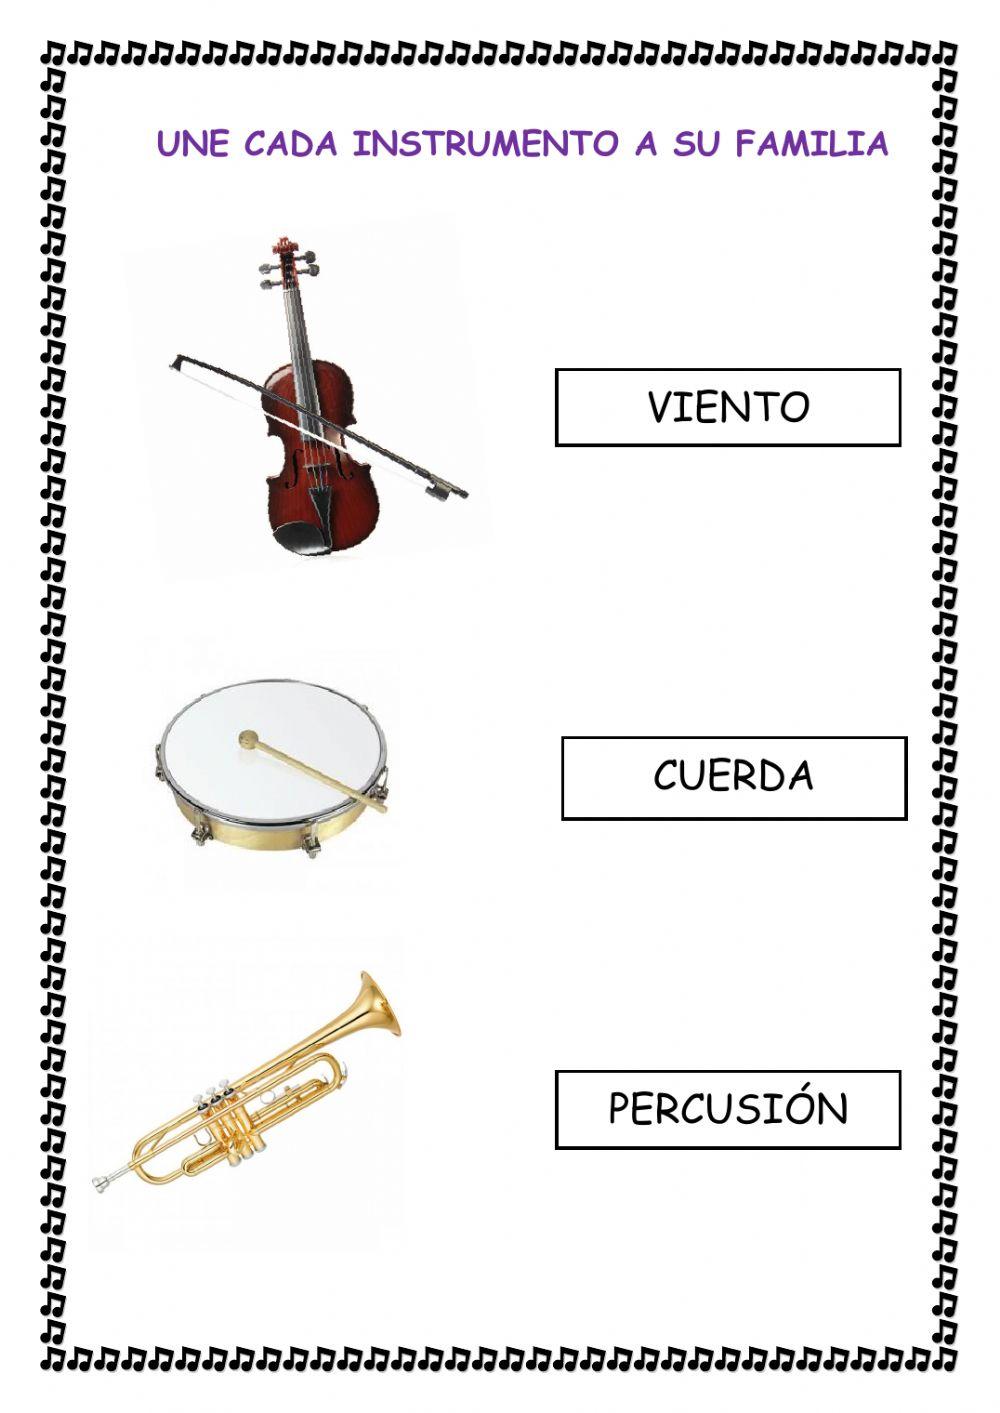 Familias de instrumentos